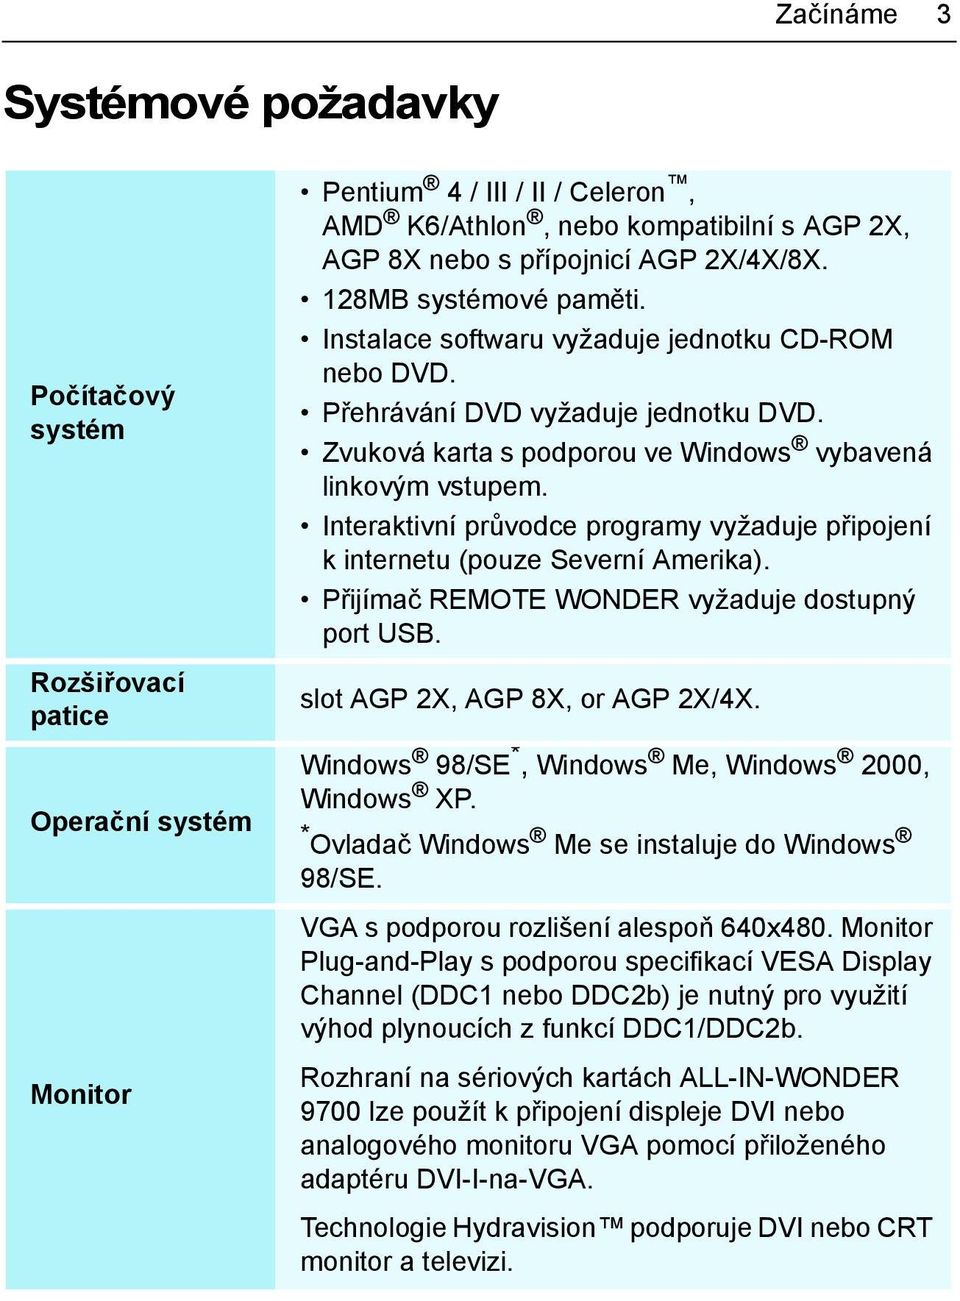 Interaktivní průvodce programy vyžaduje připojení k internetu (pouze Severní Amerika). Přijímač REMOTE WONDER vyžaduje dostupný port USB. slot AGP 2X, AGP 8X, or AGP 2X/4X.